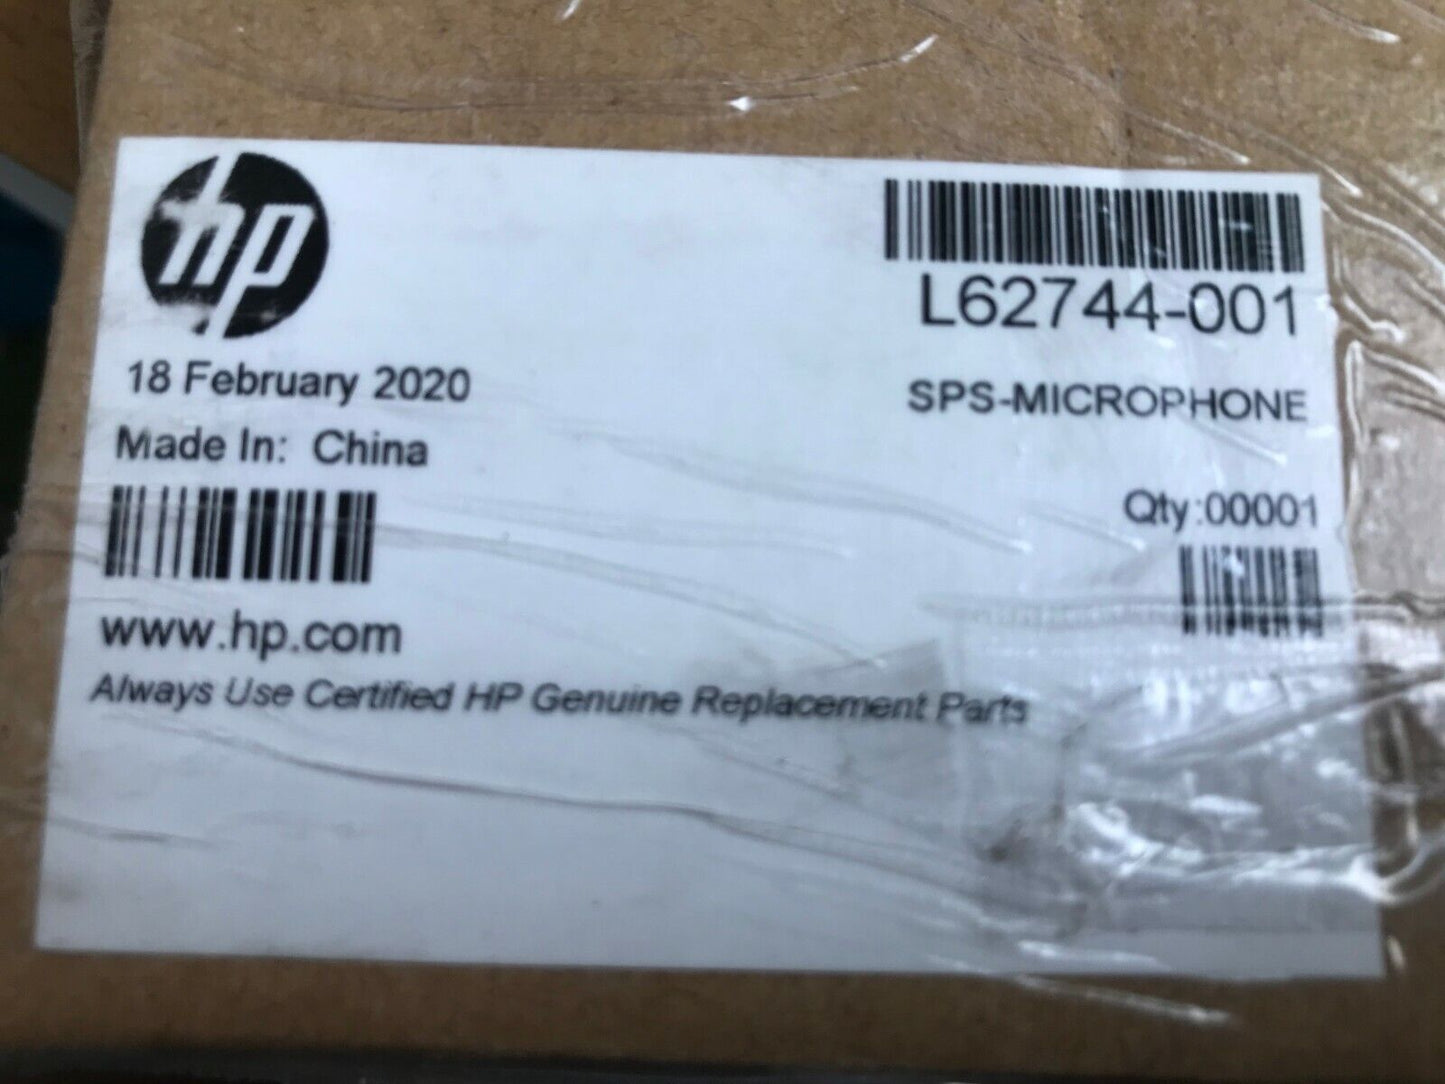 NEW HP L62744-001 MICROPHONE